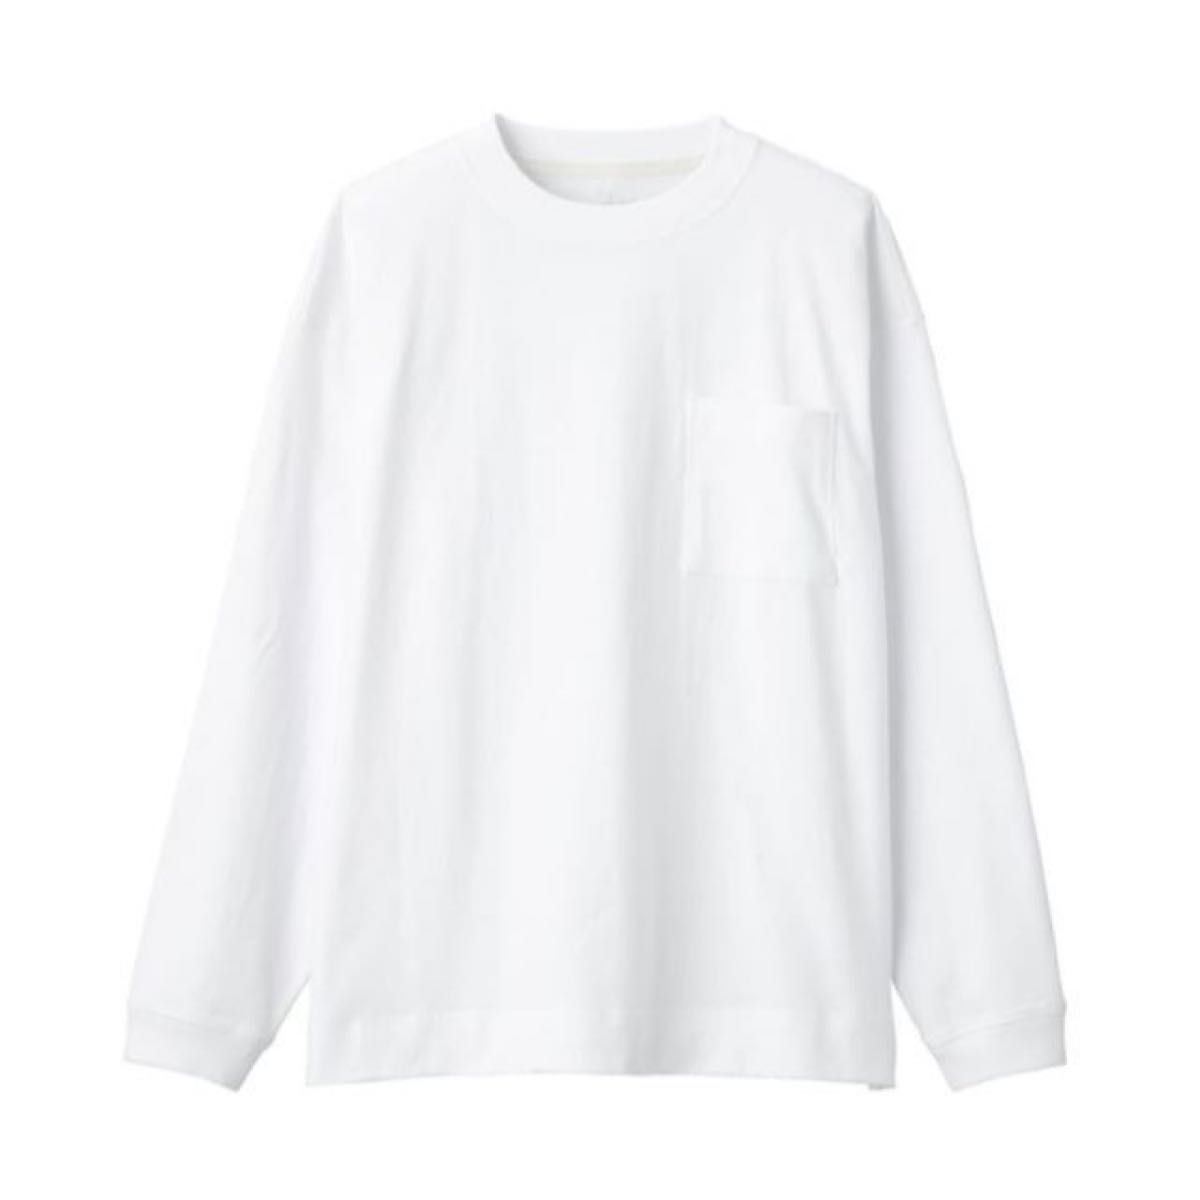 【未使用】無印良品 ポケット付き長袖Tシャツ/白色 Mサイズ